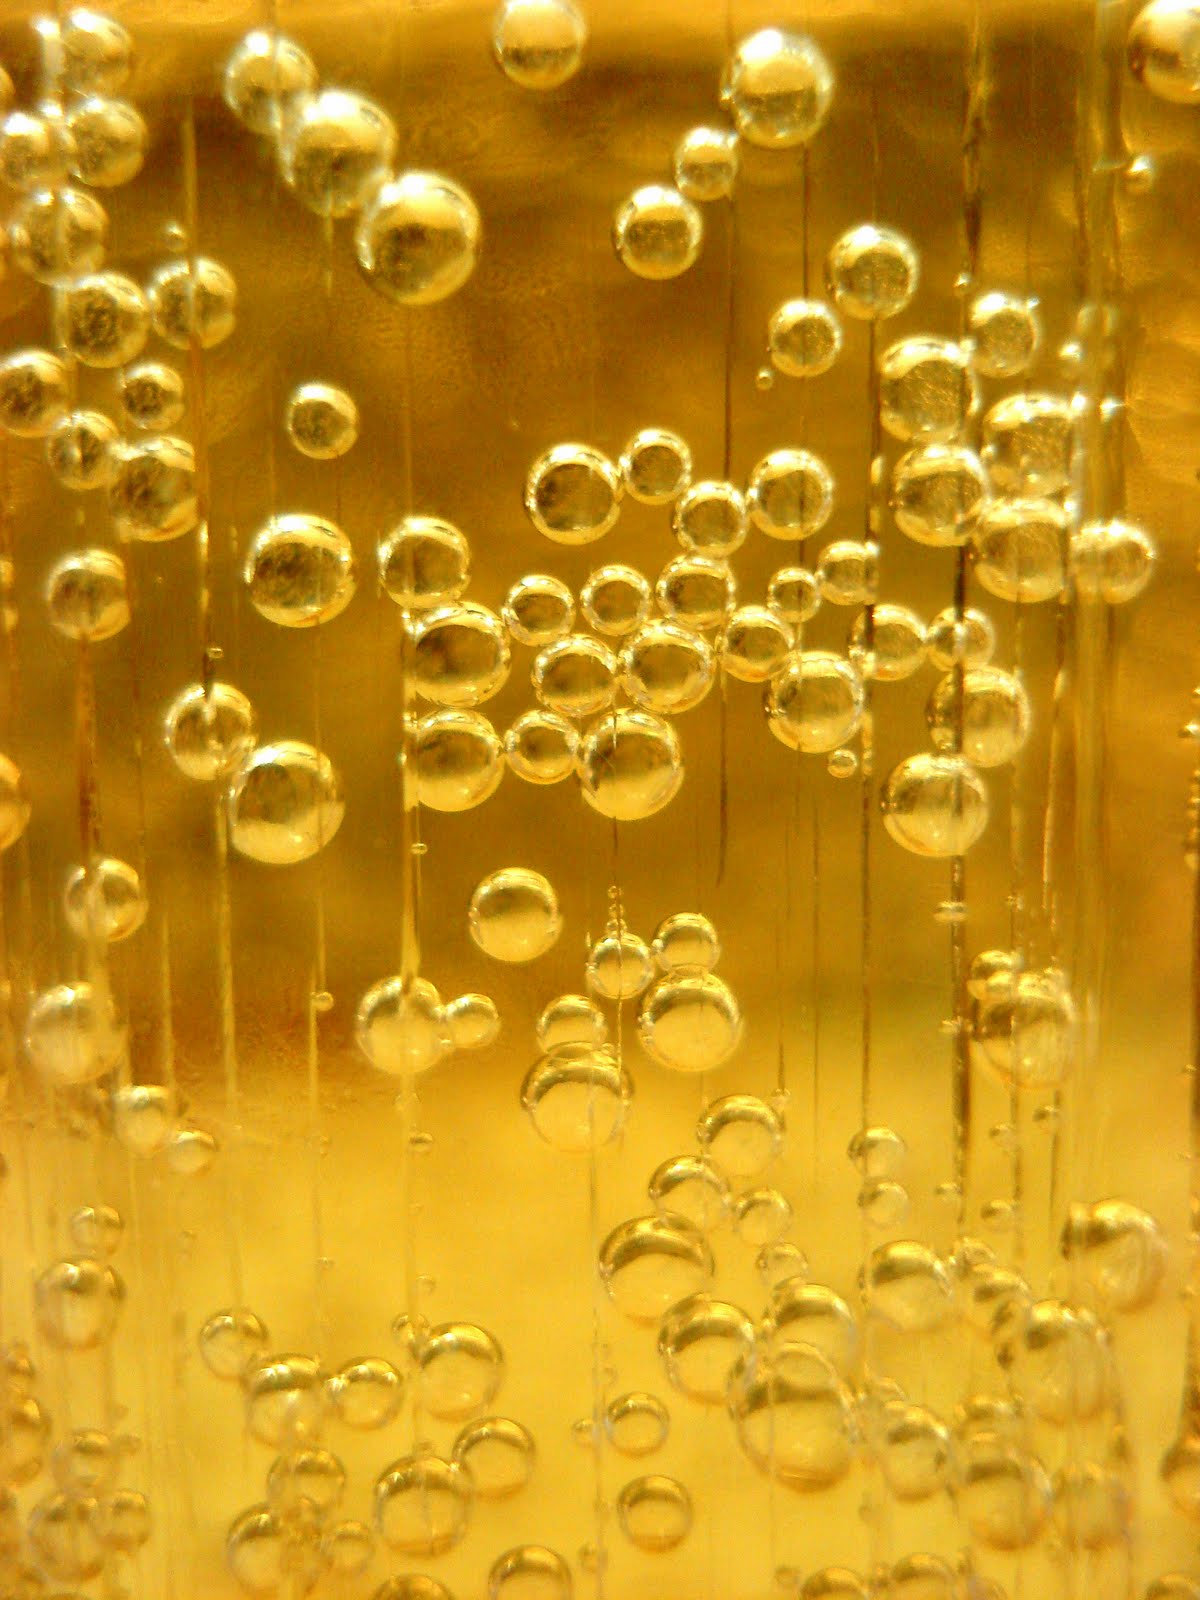 Пузырьки в масле. Золотые пузырьки. Пиво пузырьки. Золотой фон с пузырьками. Пивные пузыри.